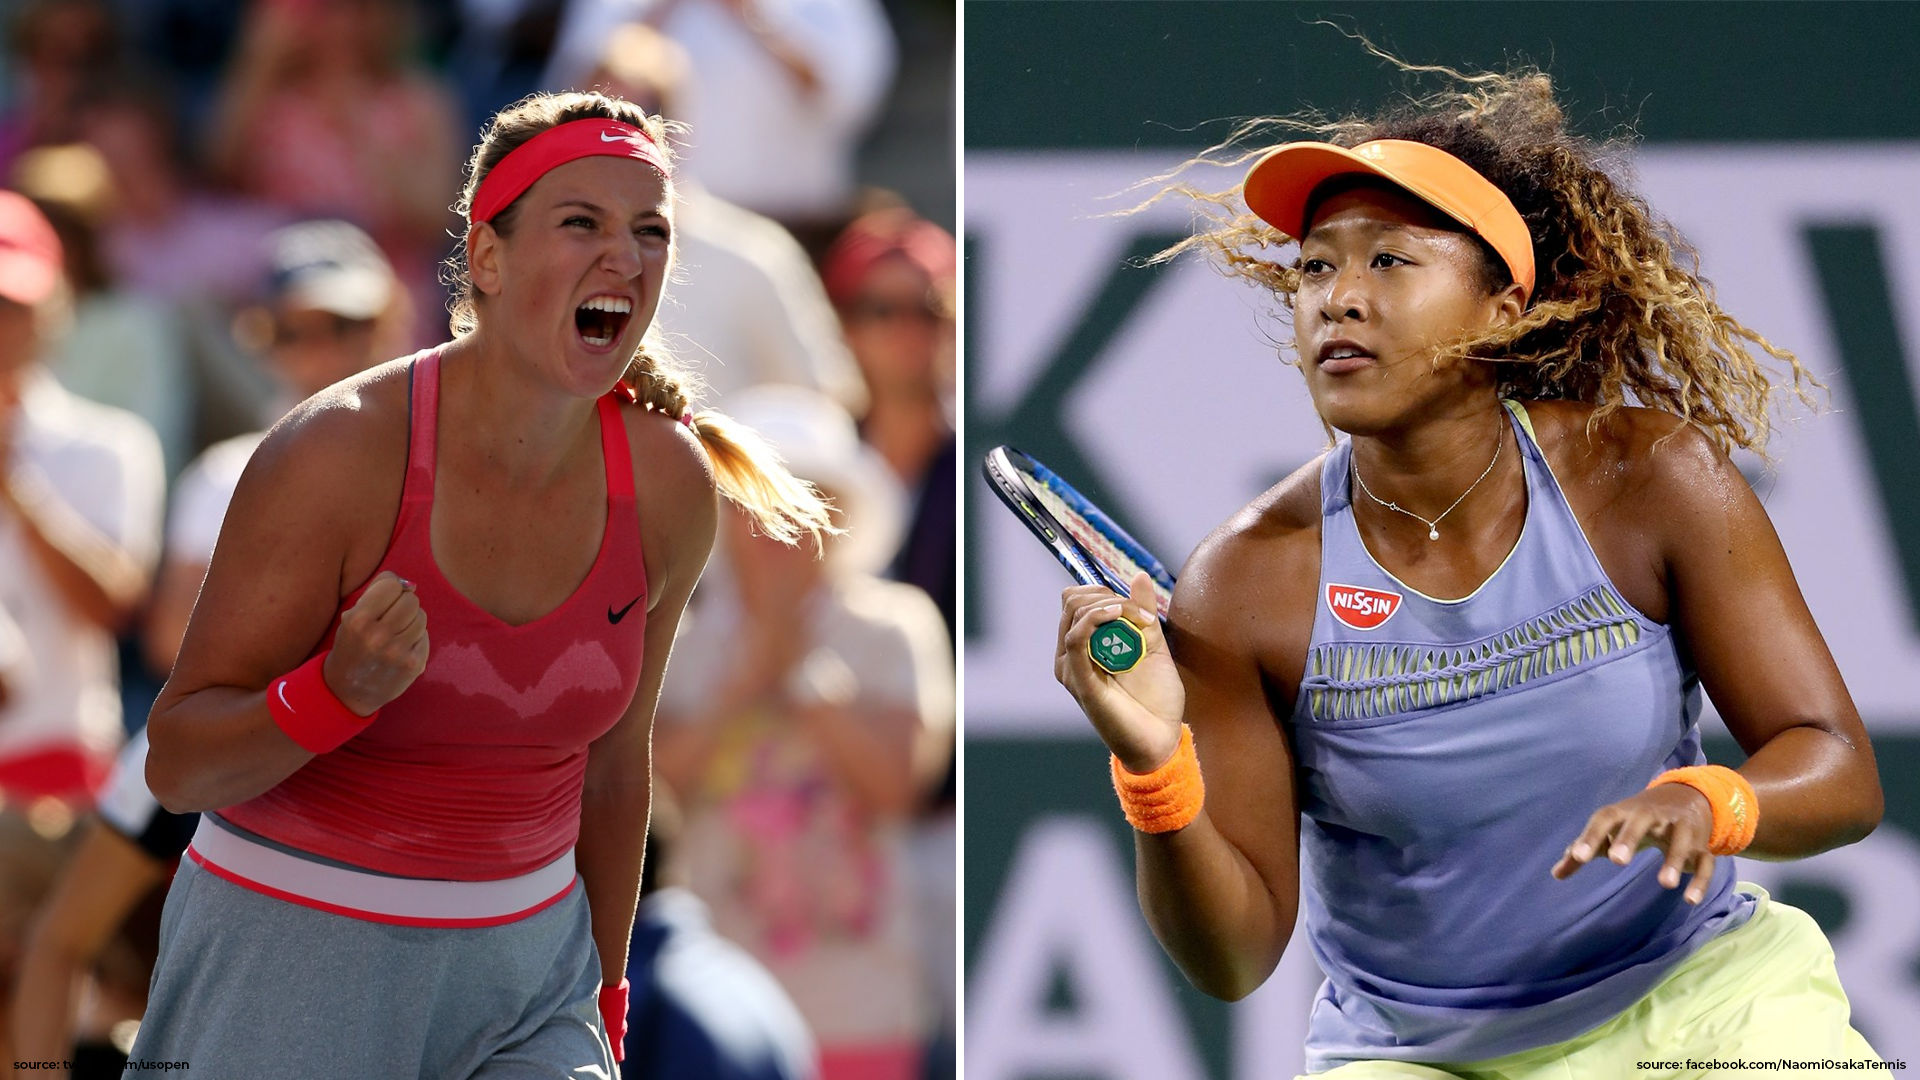 Naomi Osaka vs Victoria Azarenka: Two champions eyeing their third Grand Slam title